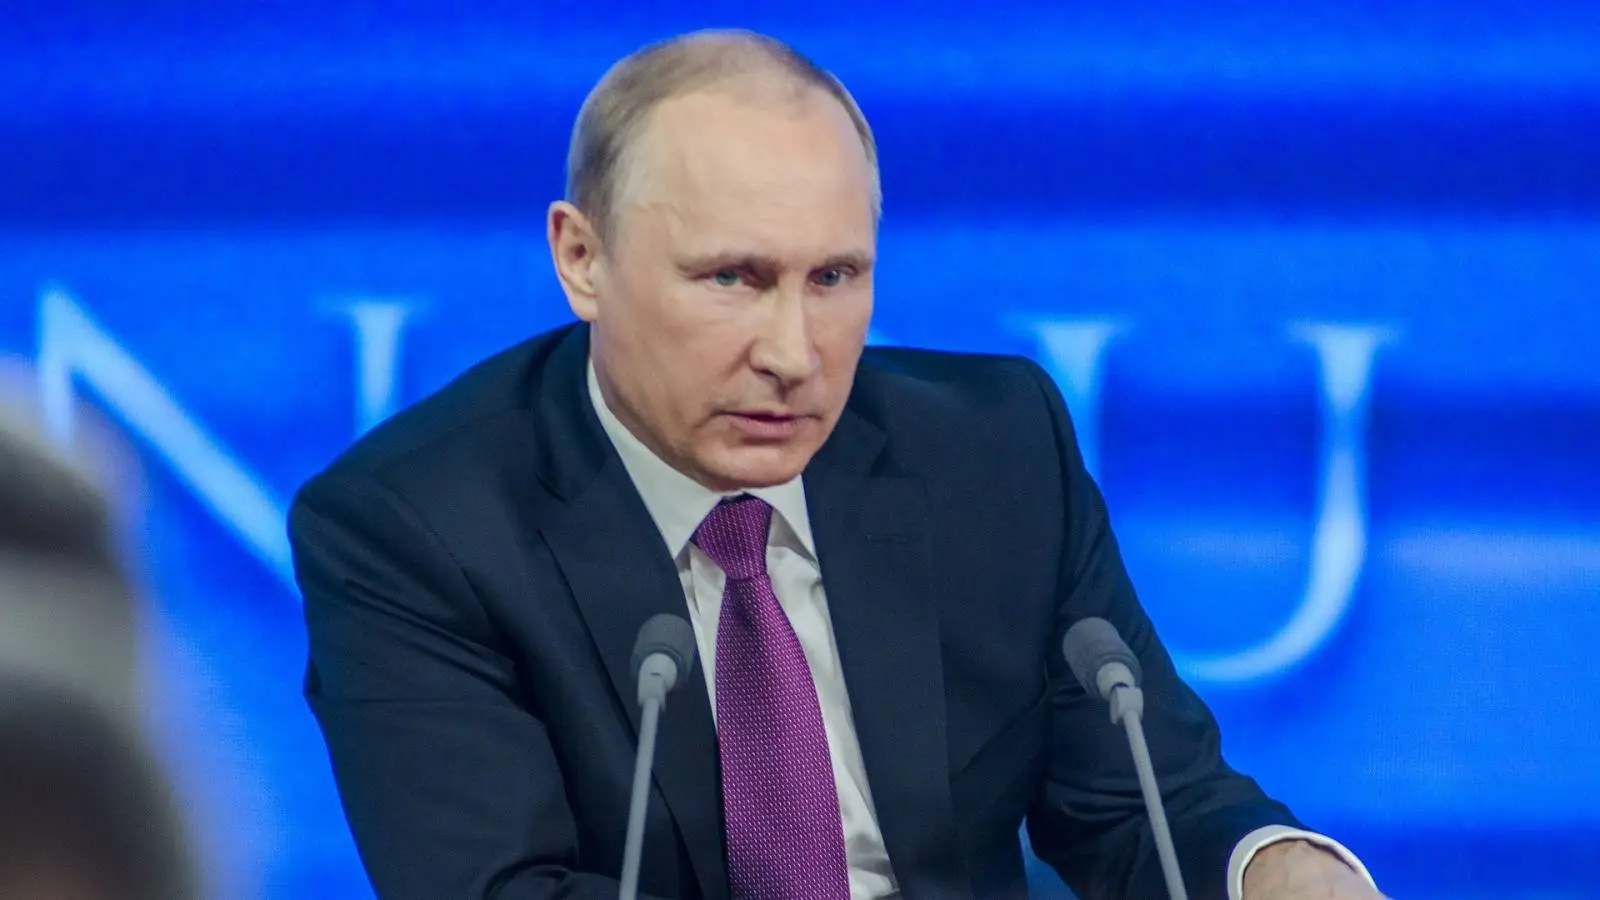 Ordre Vladimir Putin fuld krig Ukraine spørger hæren